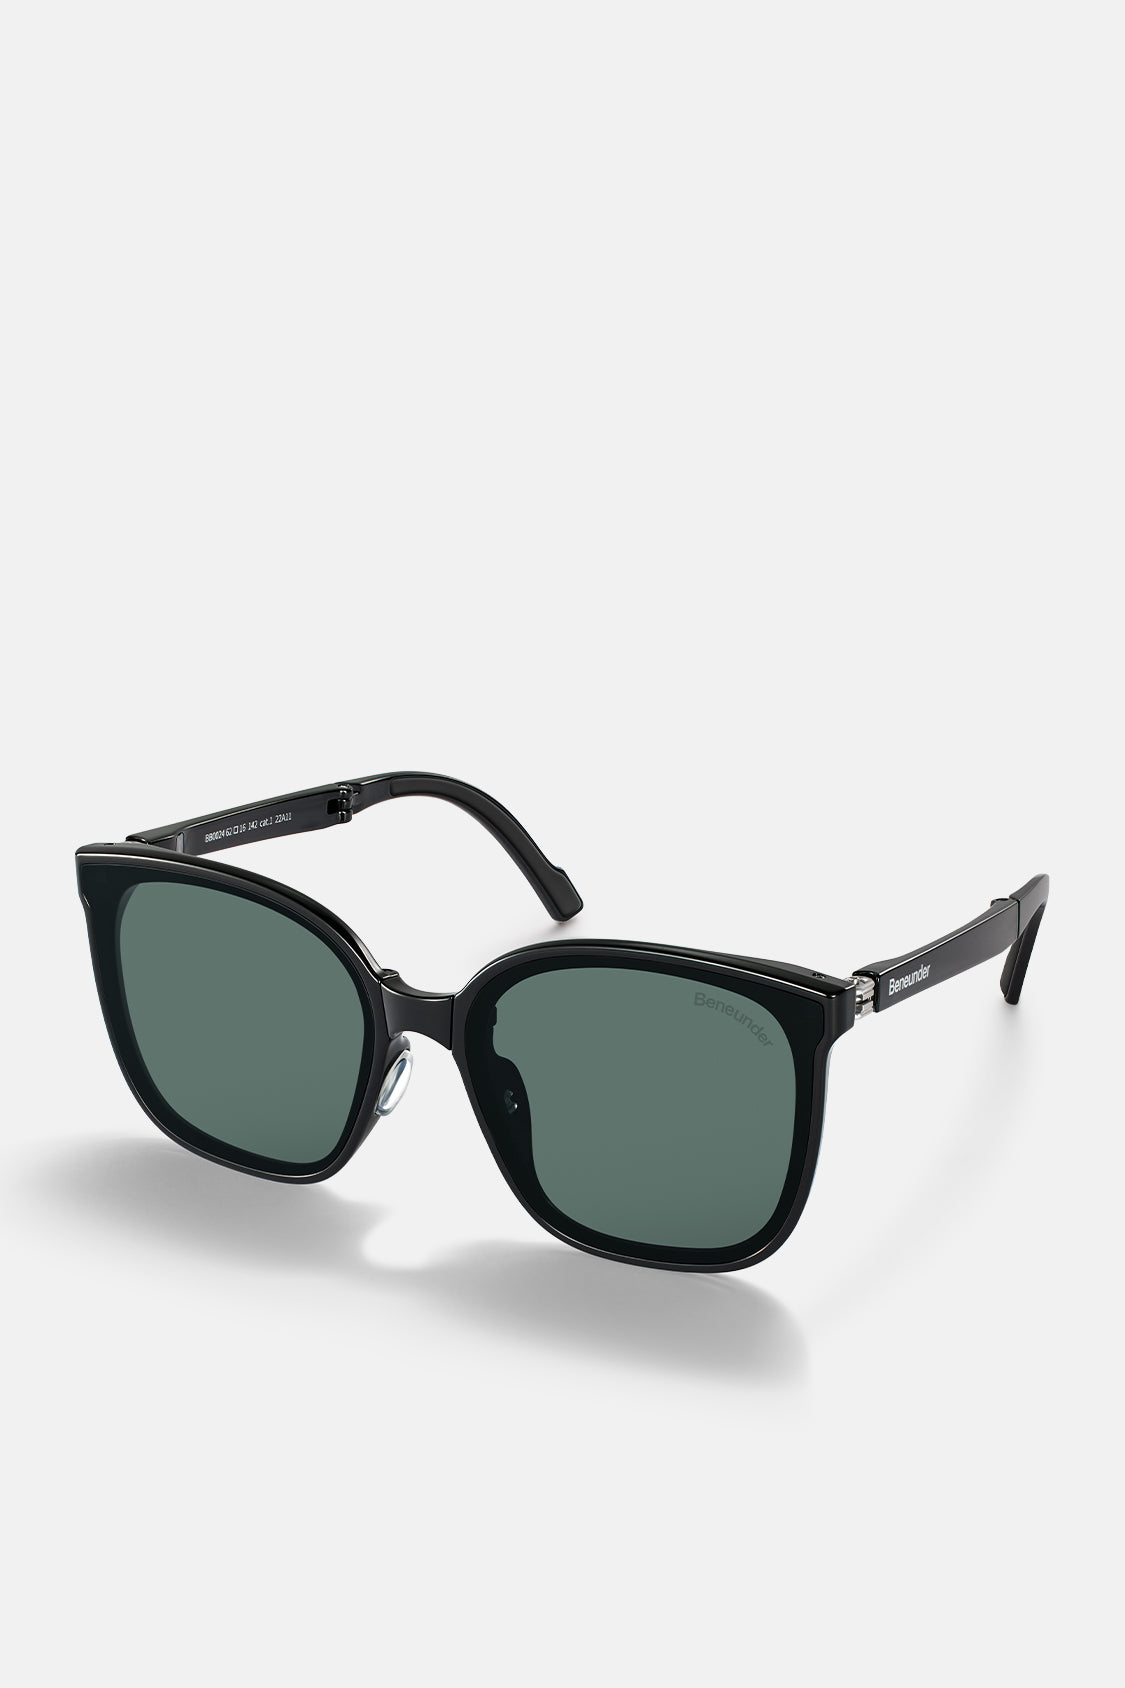 Polarized Folding Sunglasses for Women&Men, Beneunder UV400 Protection Super Lightweight Designer Square Sunglasses for Driving, Fishing, Hiking, Golf